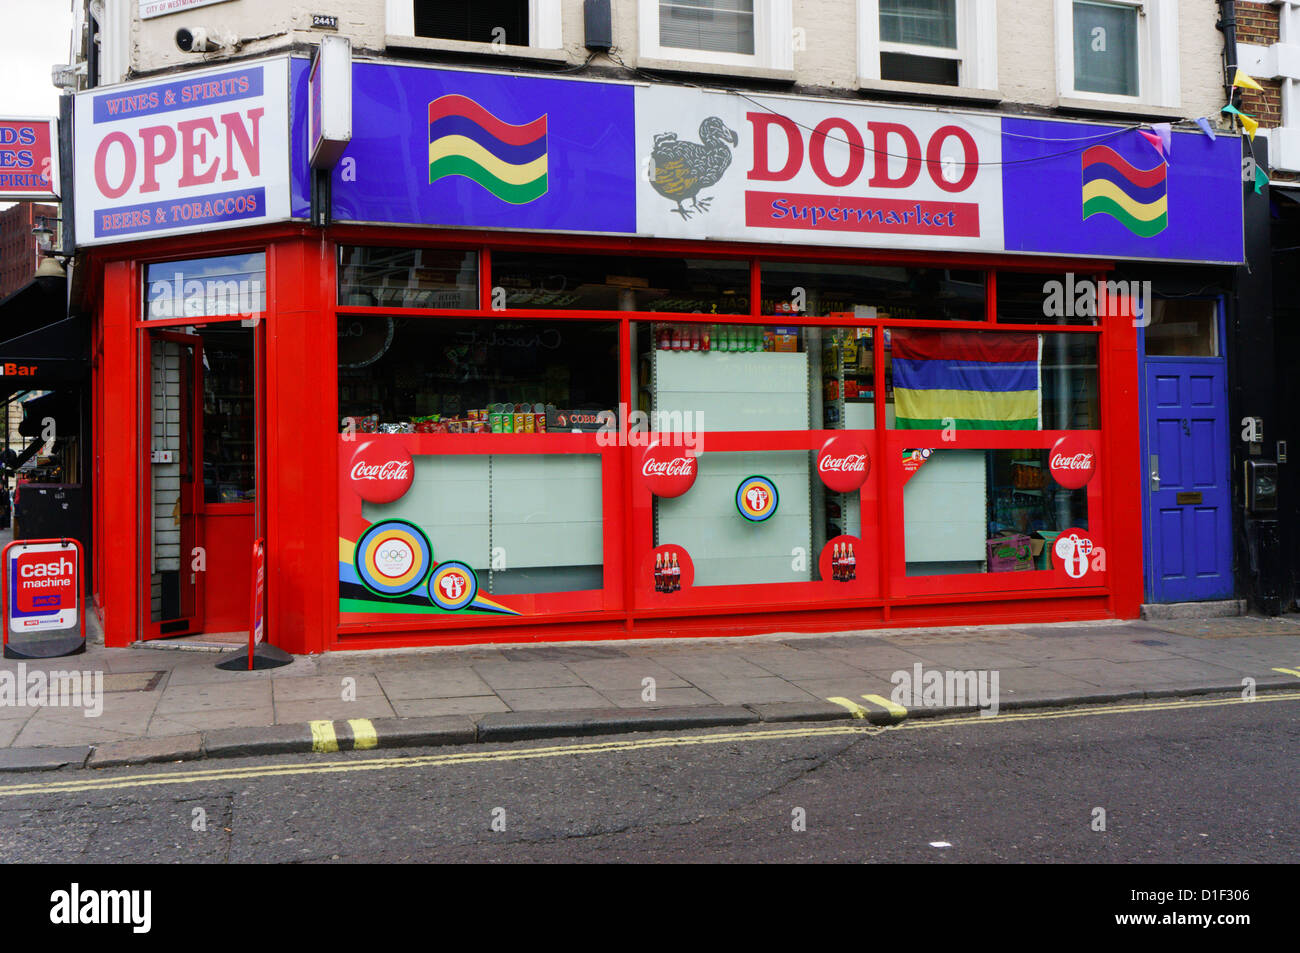 The Dodo supermarket in Frith Street, Soho, London. Stock Photo